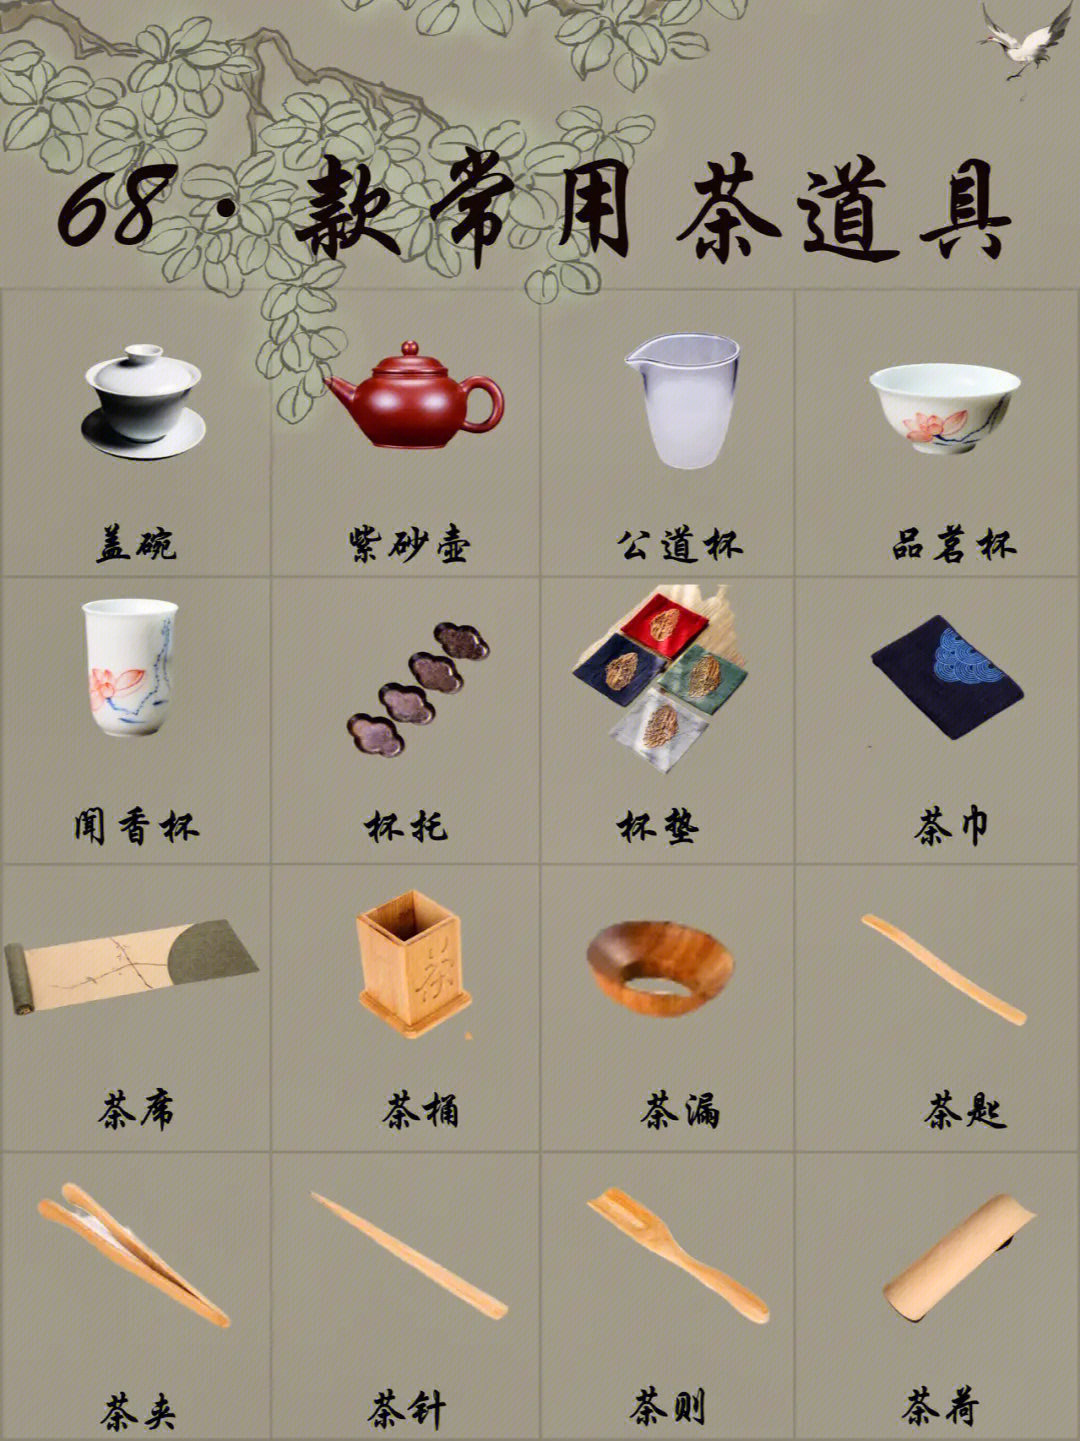 茶具各种器具名称图片